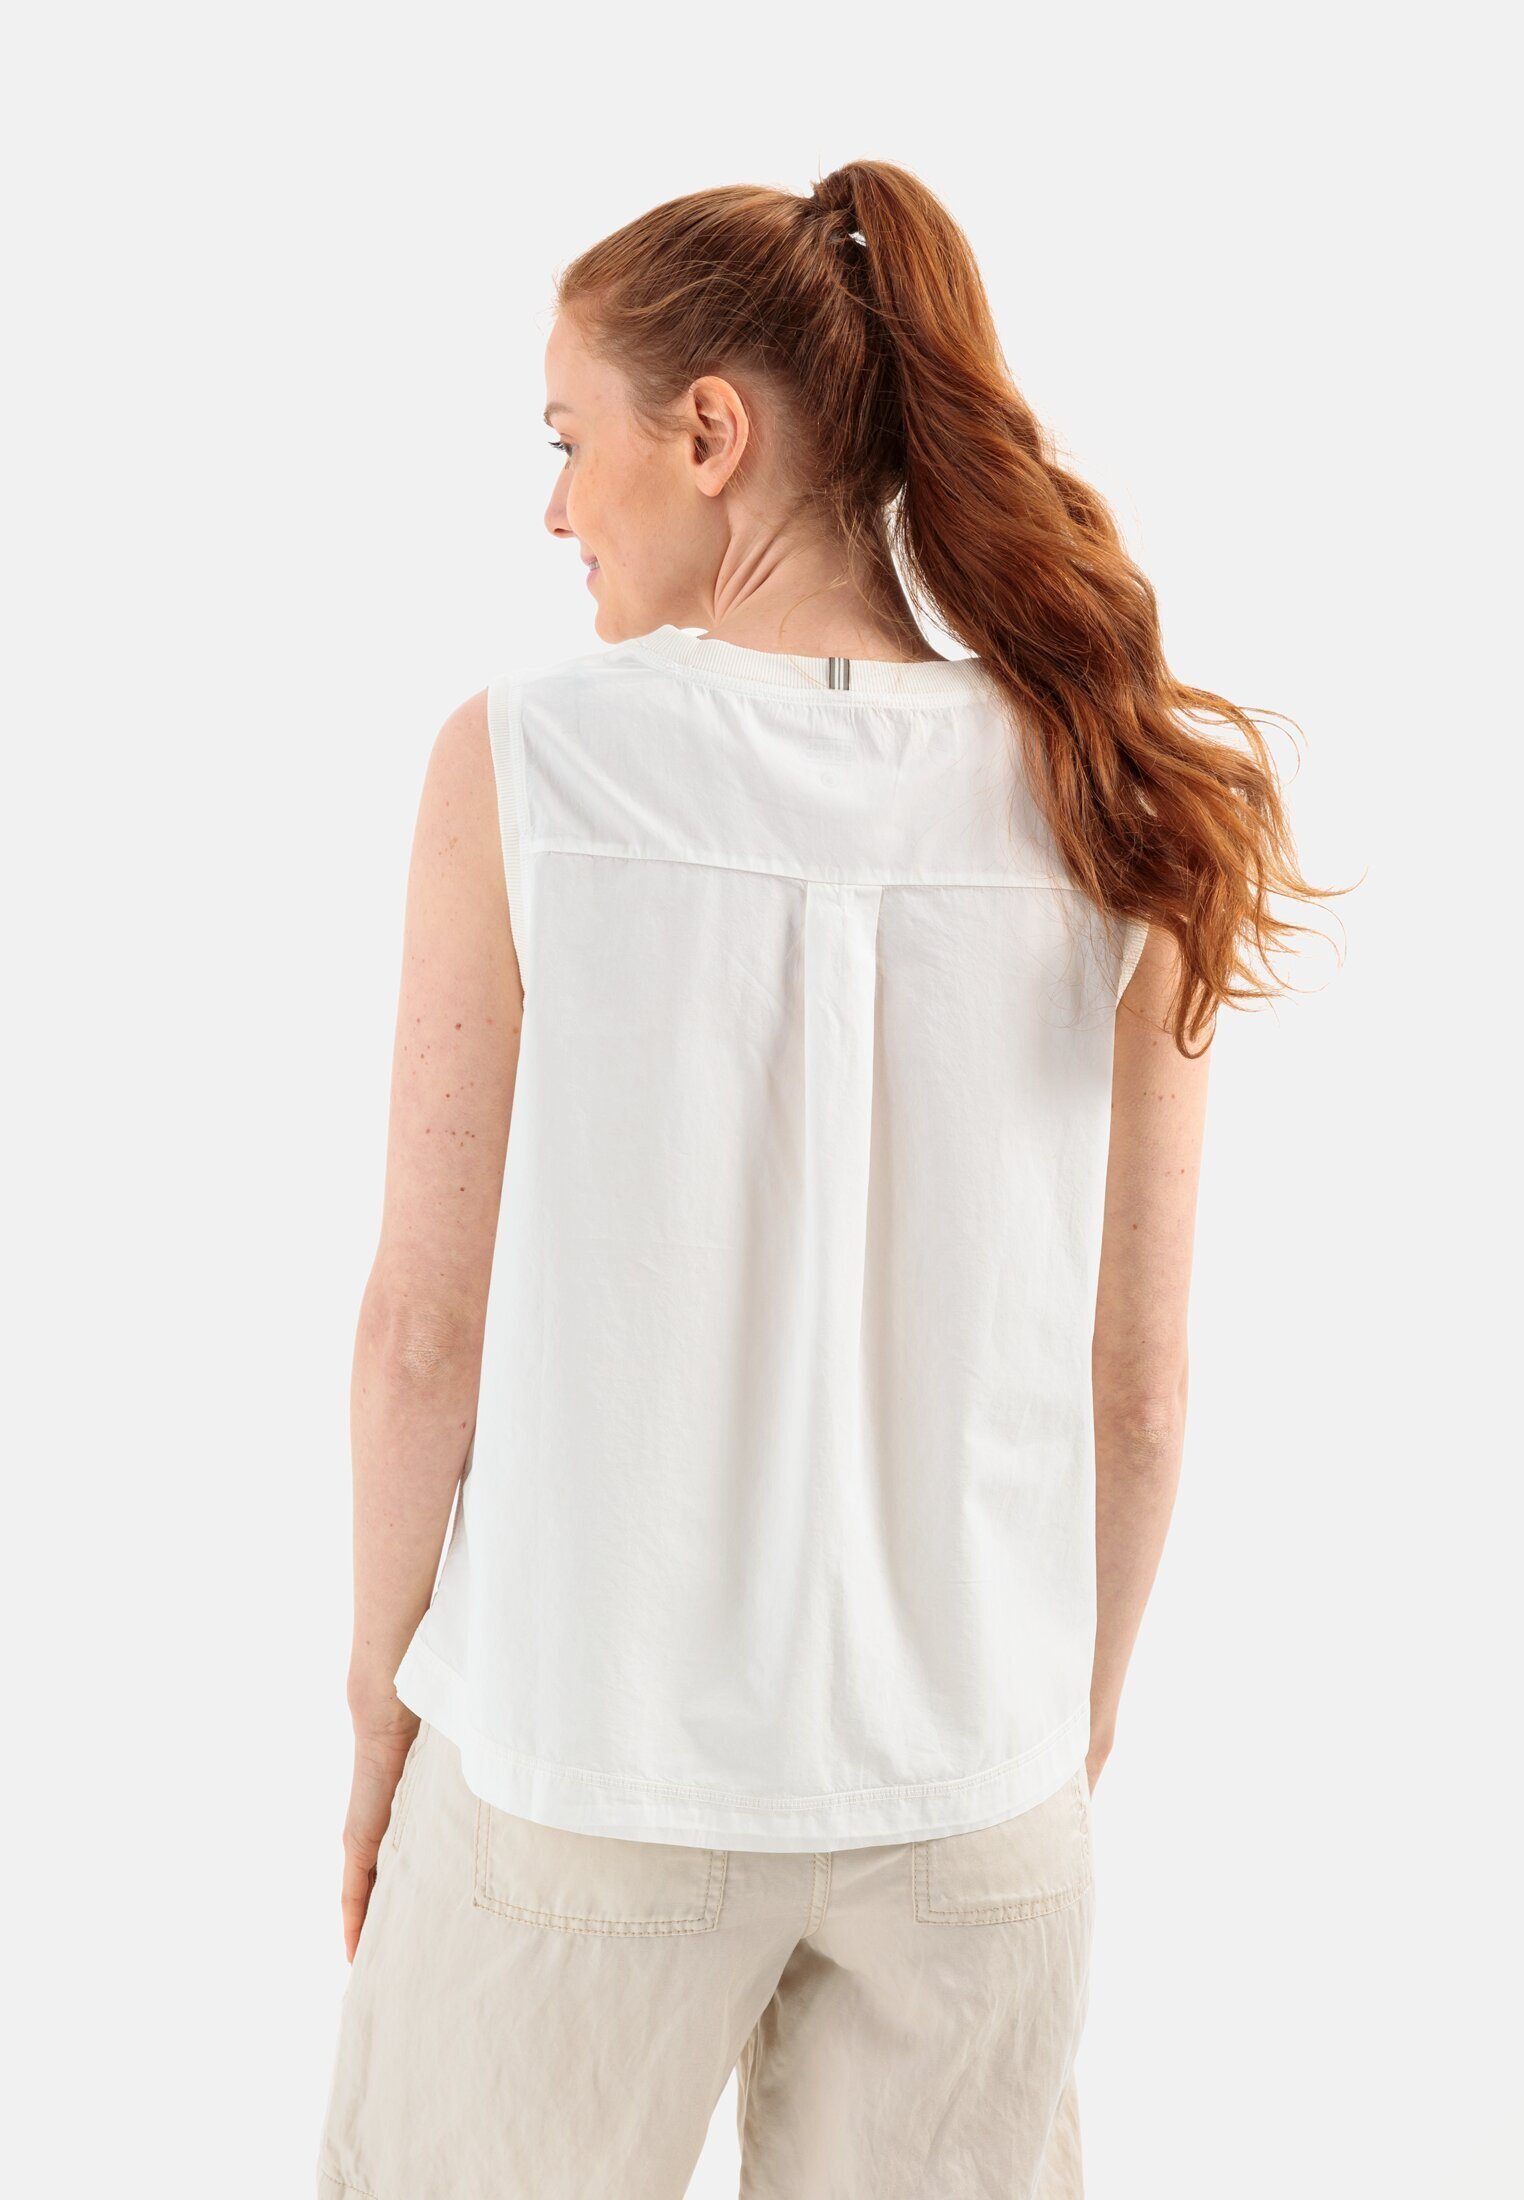 Shirttop camel Weiß active Brusttasche mit